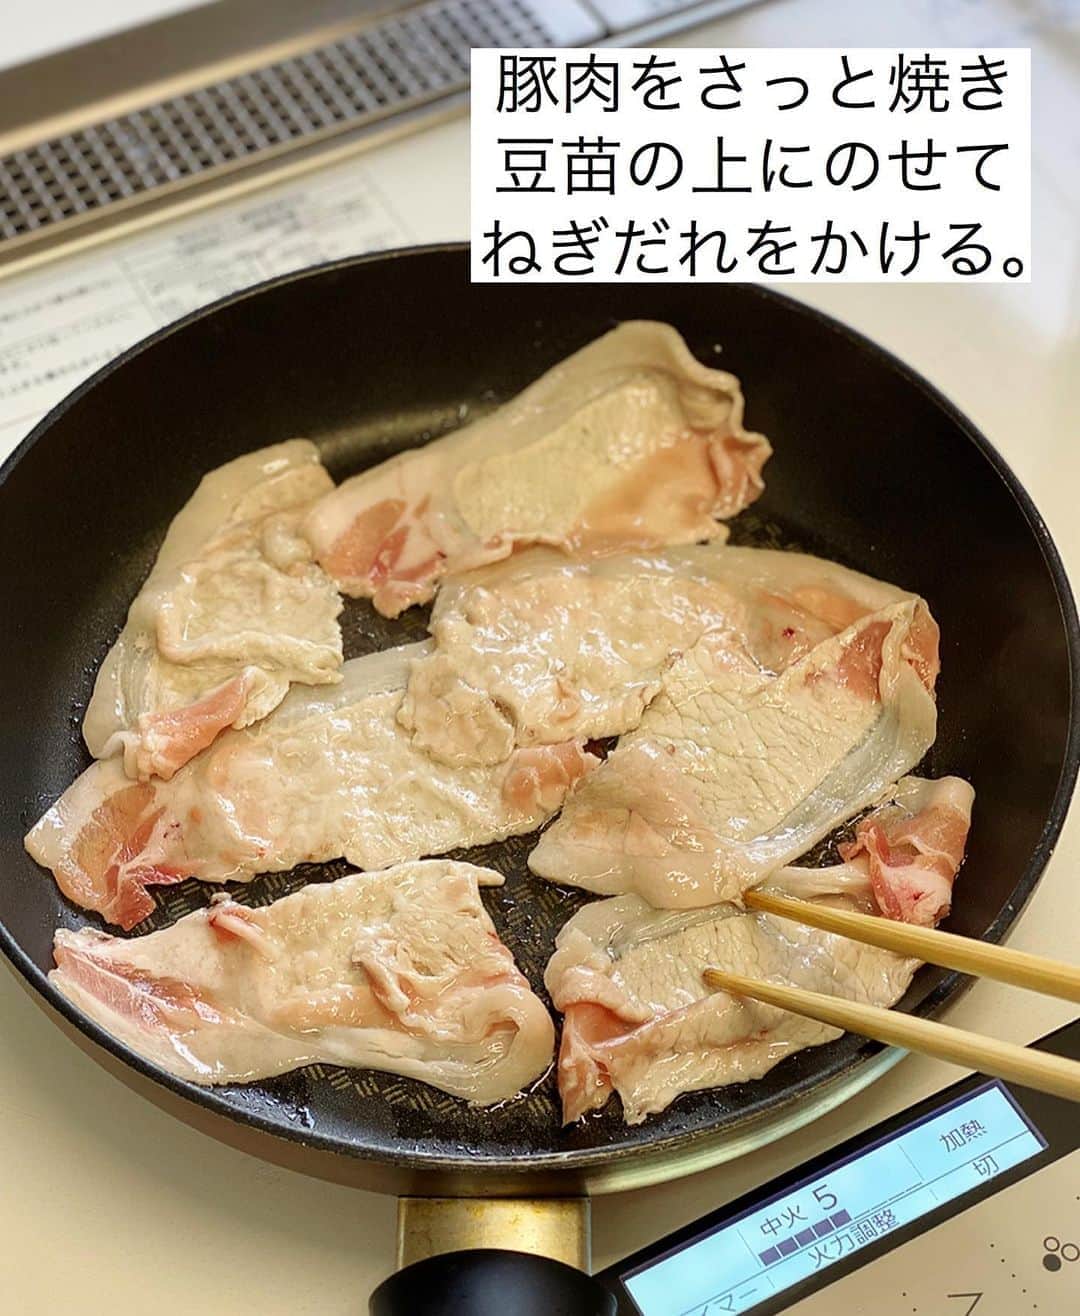 Mizuki【料理ブロガー・簡単レシピ】さんのインスタグラム写真 - (Mizuki【料理ブロガー・簡単レシピ】Instagram)「・﻿ 【レシピ】ーーーーーーー﻿ ♡ねぎだれ焼きしゃぶ♡﻿ ーーーーーーーーーーーー﻿ ﻿ ﻿ ﻿ おはようございます(*^^*)﻿ ﻿ 今日ご紹介させていただくのは﻿ ねぎだれたっぷりの焼きしゃぶ♡﻿ 焼きしゃぶはその名の通り﻿ \\ さっと焼くだけ //﻿ お湯を沸かす必要がないので﻿ 思い立ったらすぐに作れますよ♩﻿ ﻿ 今回は豆苗と盛り合わせましたが﻿ 野菜はお好みでアレンジOKです♡﻿ とっても簡単にできるので﻿ よかったらお試し下さいね(*^^*)﻿ ﻿ ﻿ ﻿ ーーーーーーーーーーーーーーーーーーーー﻿ 【2人分】﻿ 豚しゃぶしゃぶ用肉...150g﻿ 豆苗...1/2〜1袋﻿ サラダ油...小1﻿ ●長ねぎ(みじん切り)...10cm﻿ ●醤油・酢・ごま...各大1.5﻿ ●砂糖・ごま油...各大1/2﻿ ﻿ 1.●を合わせてねぎだれを作る。豆苗は食べやすい長さに切って器に盛り付ける。﻿ 2.フライパンにサラダ油を中火で熱し、豚肉を両面焼く。火が通ったら豆苗の上に盛り付け、ねぎだれをかける。﻿ ーーーーーーーーーーーーーーーーーーーー﻿ ﻿ ﻿ ﻿ 《ポイント》﻿ ♦︎購入した豆苗は生で食べられます♩くせが気になる方は軽くレンチンしてもOK！ ♦︎豚肉は両面さっと焼いて火を通して下さい♩焼き過ぎるとかたくなるので注意☆﻿ ﻿ ﻿ ﻿ ﻿ ﻿ ﻿ ﻿ ＿＿＿＿＿＿＿＿＿＿＿＿＿＿＿＿＿＿＿﻿ 📕7刷重版しました📕﻿ 簡単・時短！ 毎日のごはんがラクになる﻿ ✨🦋 【 #Mizukiの今どき和食 】🦋✨﻿ ＿＿＿＿＿＿＿＿＿＿＿＿＿＿＿＿＿＿＿﻿ なるべく少ない材料で﻿ 手間も時間も省きながら﻿ 簡単にできるおいしい和食レシピ♩﻿ 簡単に失敗なくマスターできる一冊で﻿ もっと気軽に、カジュアルに﻿ 和食を楽しんで下さいね(*^^*)﻿ ＿＿＿＿＿＿＿＿＿＿＿＿＿＿＿＿＿＿＿﻿ ﻿ ﻿ ﻿ ＿＿＿＿＿＿＿＿＿＿＿＿＿＿＿＿＿＿＿﻿ 🎀6刷重版しました🎀﻿ 混ぜて焼くだけ。はじめてでも失敗しない！﻿ 【#ホットケーキミックスのお菓子 】﻿ ﻿ 一冊まるっとホケミスイーツ♩﻿ 普段のおやつから﻿ 特別な日にも使えるレシピを﻿ この一冊に詰め込みました(*^^*)﻿ ホットケーキミックスを使えば﻿ 簡単に本格的なお菓子が作れますよ♡﻿ ＿＿＿＿＿＿＿＿＿＿＿＿＿＿＿＿＿﻿ ﻿ ﻿ ﻿ ﻿ ￣￣￣￣￣￣￣￣￣￣￣￣￣￣￣￣￣￣﻿ レシピを作って下さった際や﻿ レシピ本についてのご投稿には﻿ タグ付け( @mizuki_31cafe )して﻿ お知らせいただけると嬉しいです😊💕﻿ ＿＿＿＿＿＿＿＿＿＿＿＿＿＿＿＿＿＿﻿ ﻿ ﻿ ﻿ ﻿ ﻿ #ねぎだれ#しゃぶしゃぶ#焼きしゃぶ#豆苗﻿ #Mizuki#簡単レシピ#時短レシピ#節約レシピ#料理#レシピ#フーディーテーブル#マカロニメイト#おうちごはん#デリスタグラマー#料理好きな人と繋がりたい#食べ物#料理記録#おうちごはんlover#写真好きな人と繋がりたい#foodpic#cooking#recipe#lin_stagrammer#foodporn#yummy#ねぎだれ焼きしゃぶm」8月25日 7時07分 - mizuki_31cafe